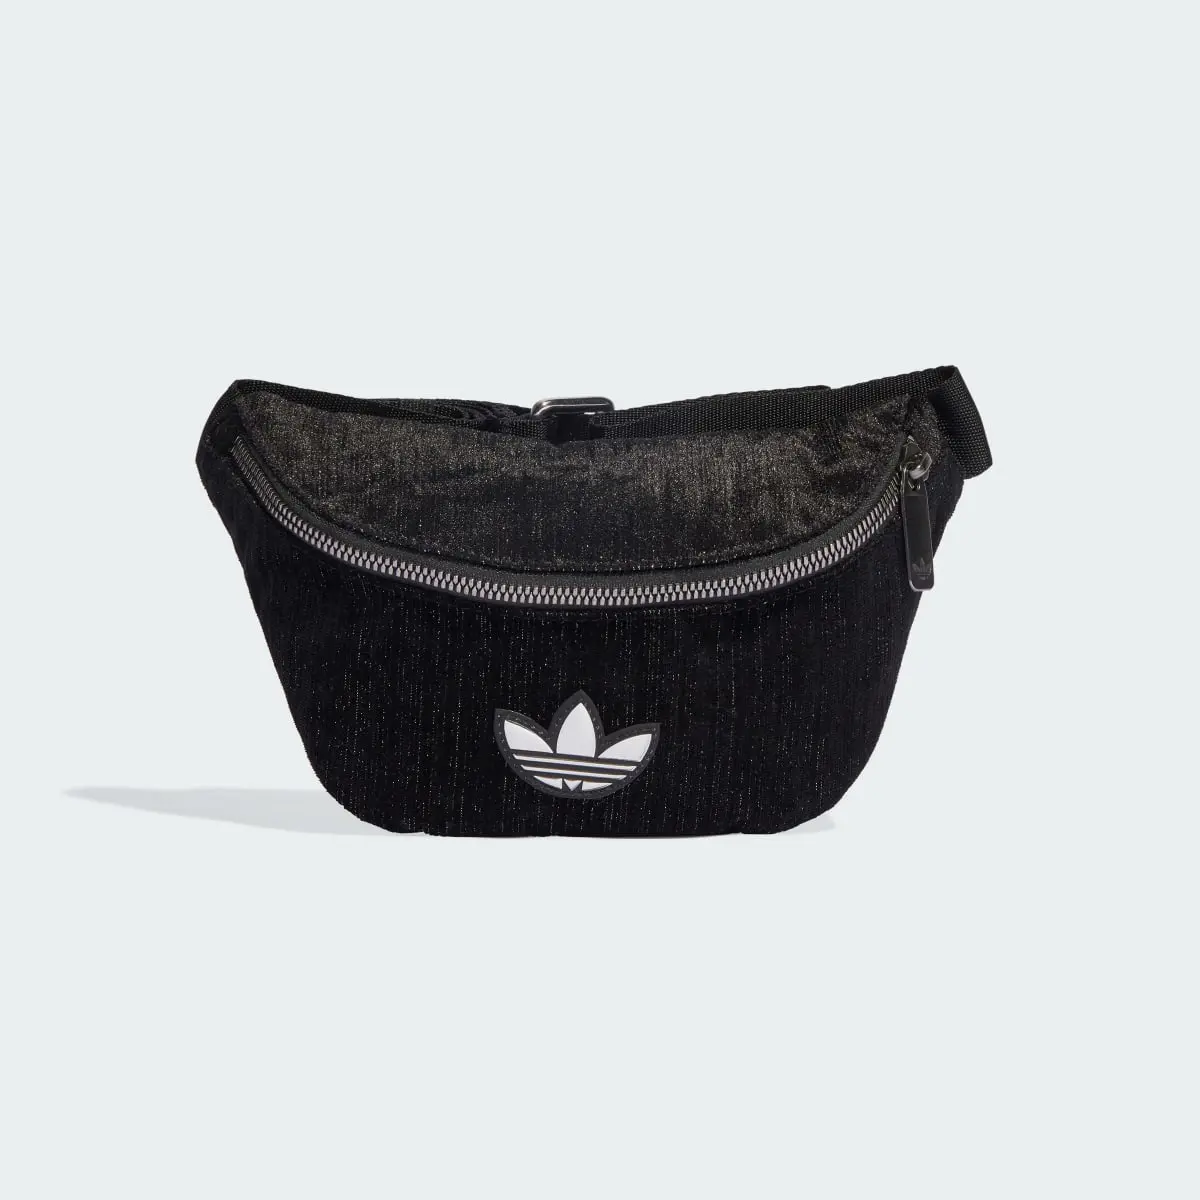 Adidas Glam Goth Waist Bag. 2